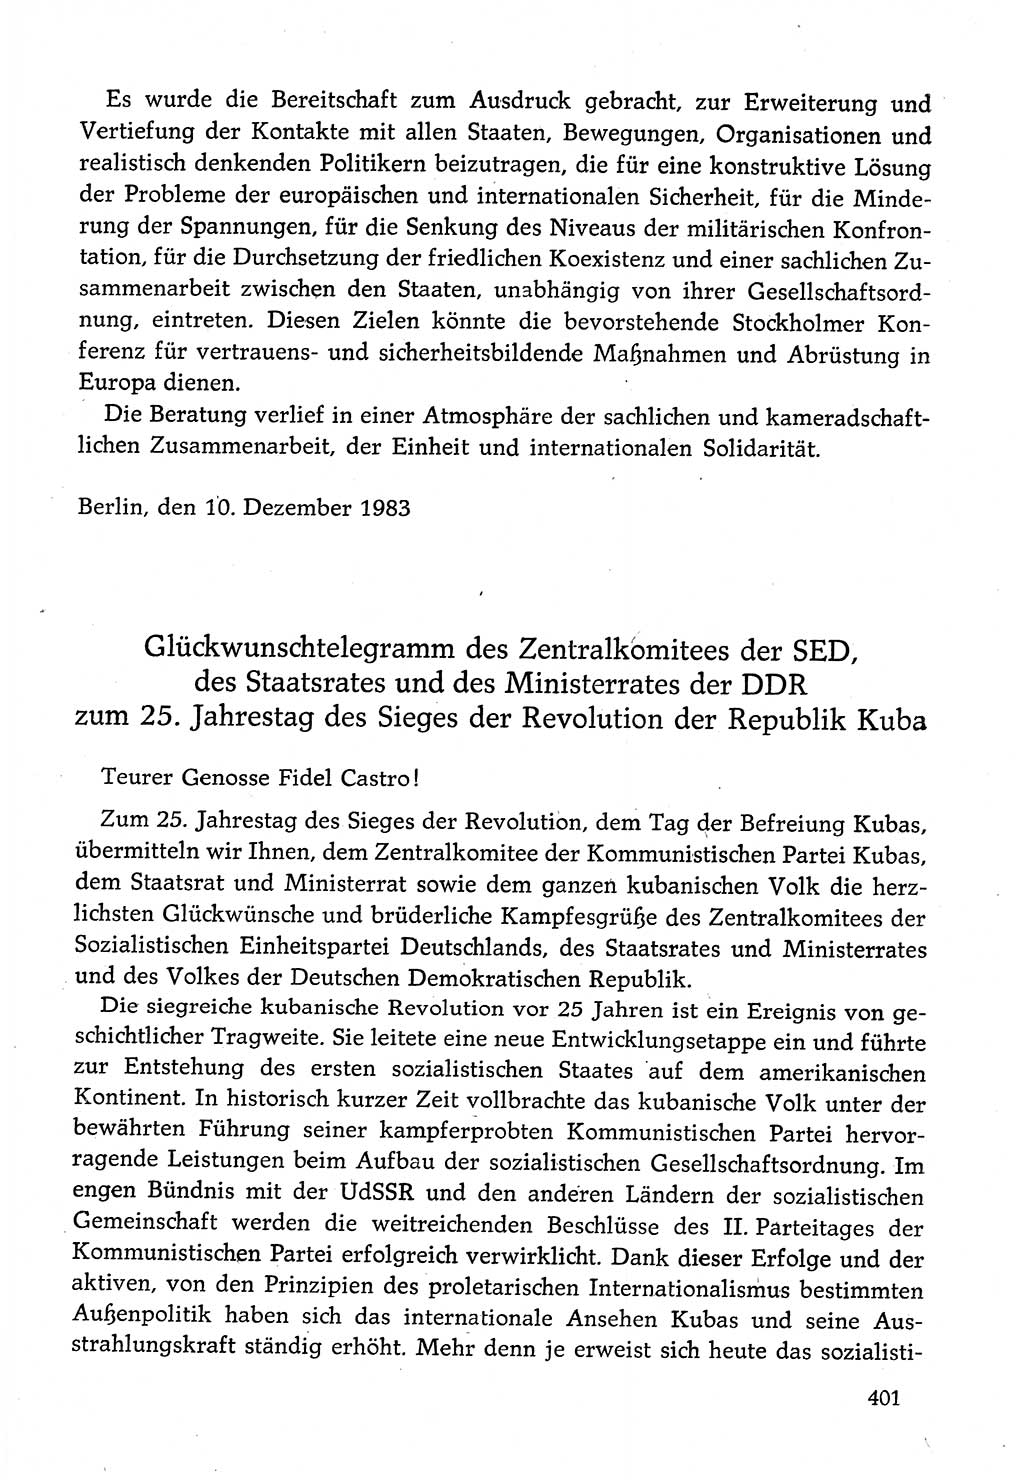 Dokumente der Sozialistischen Einheitspartei Deutschlands (SED) [Deutsche Demokratische Republik (DDR)] 1982-1983, Seite 401 (Dok. SED DDR 1982-1983, S. 401)